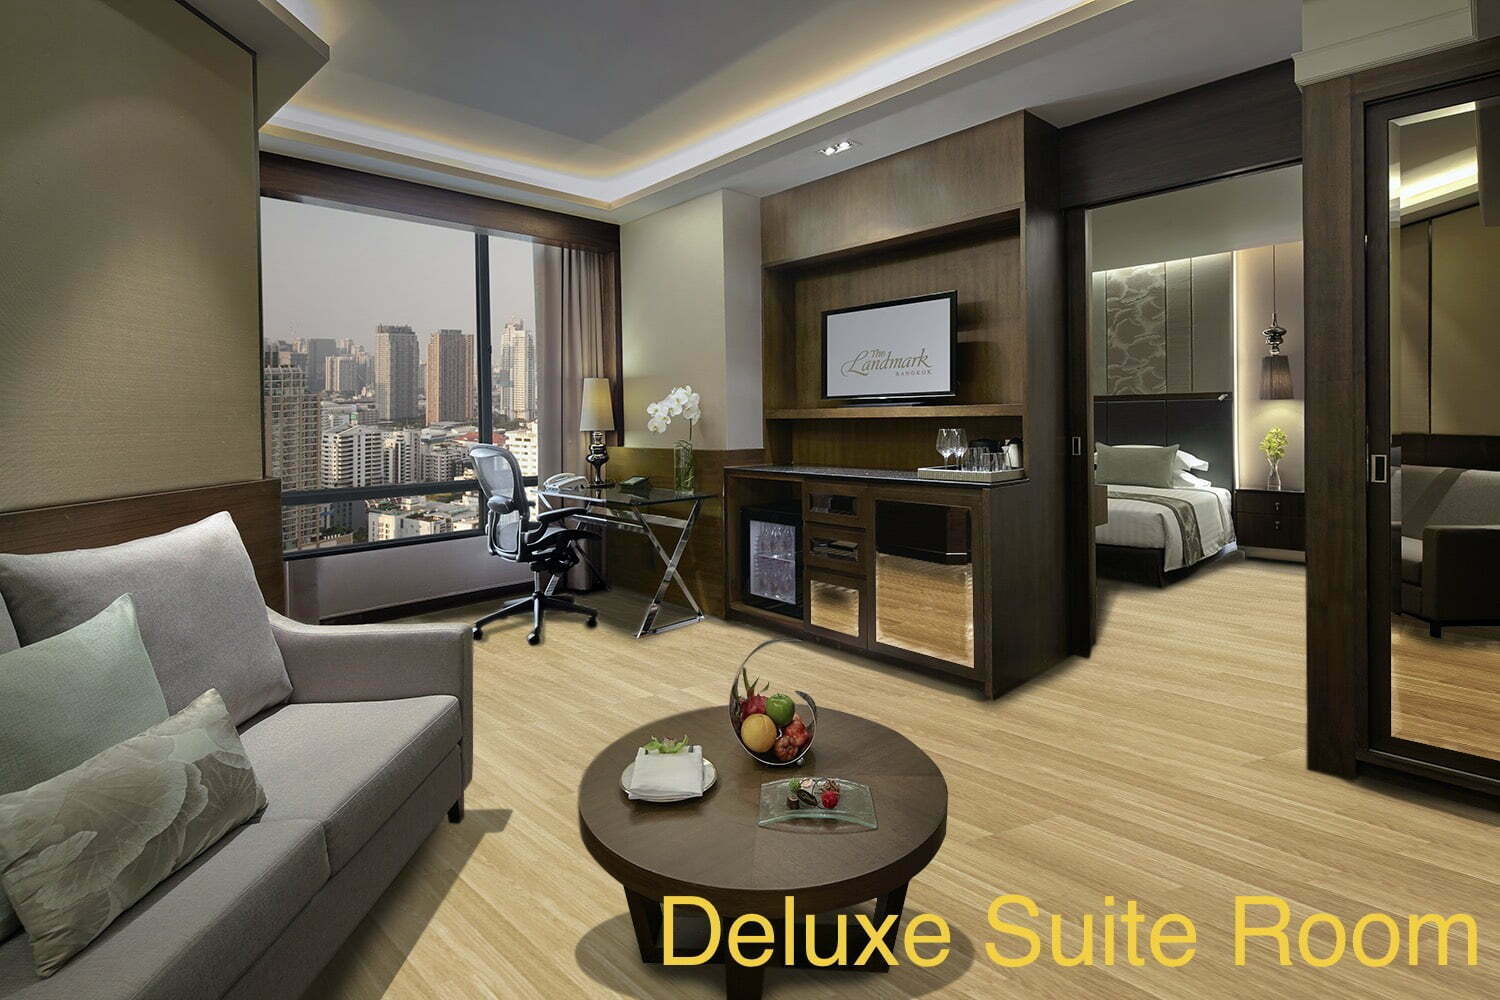 Luxury 5 Star Hotel Deluxe Suite Room